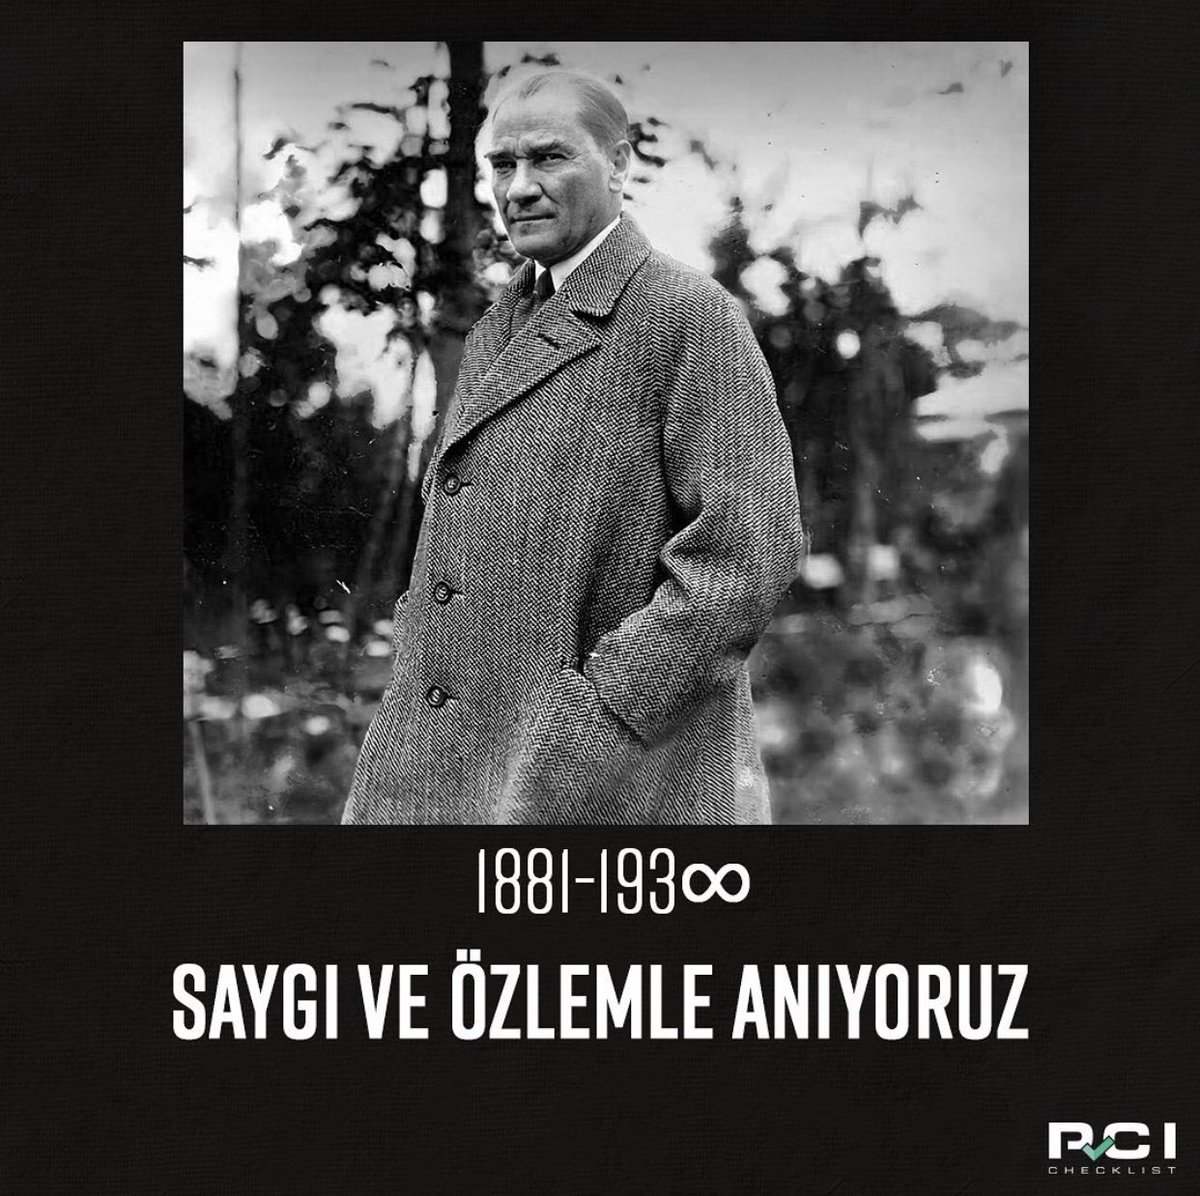 Ölümsüzlüğünün 84. Yılında, Ulu Önderimiz Mustafa Kemal Atatürk’ü sevgi, saygı ve minnetle anıyoruz. ♾ #10Kasim